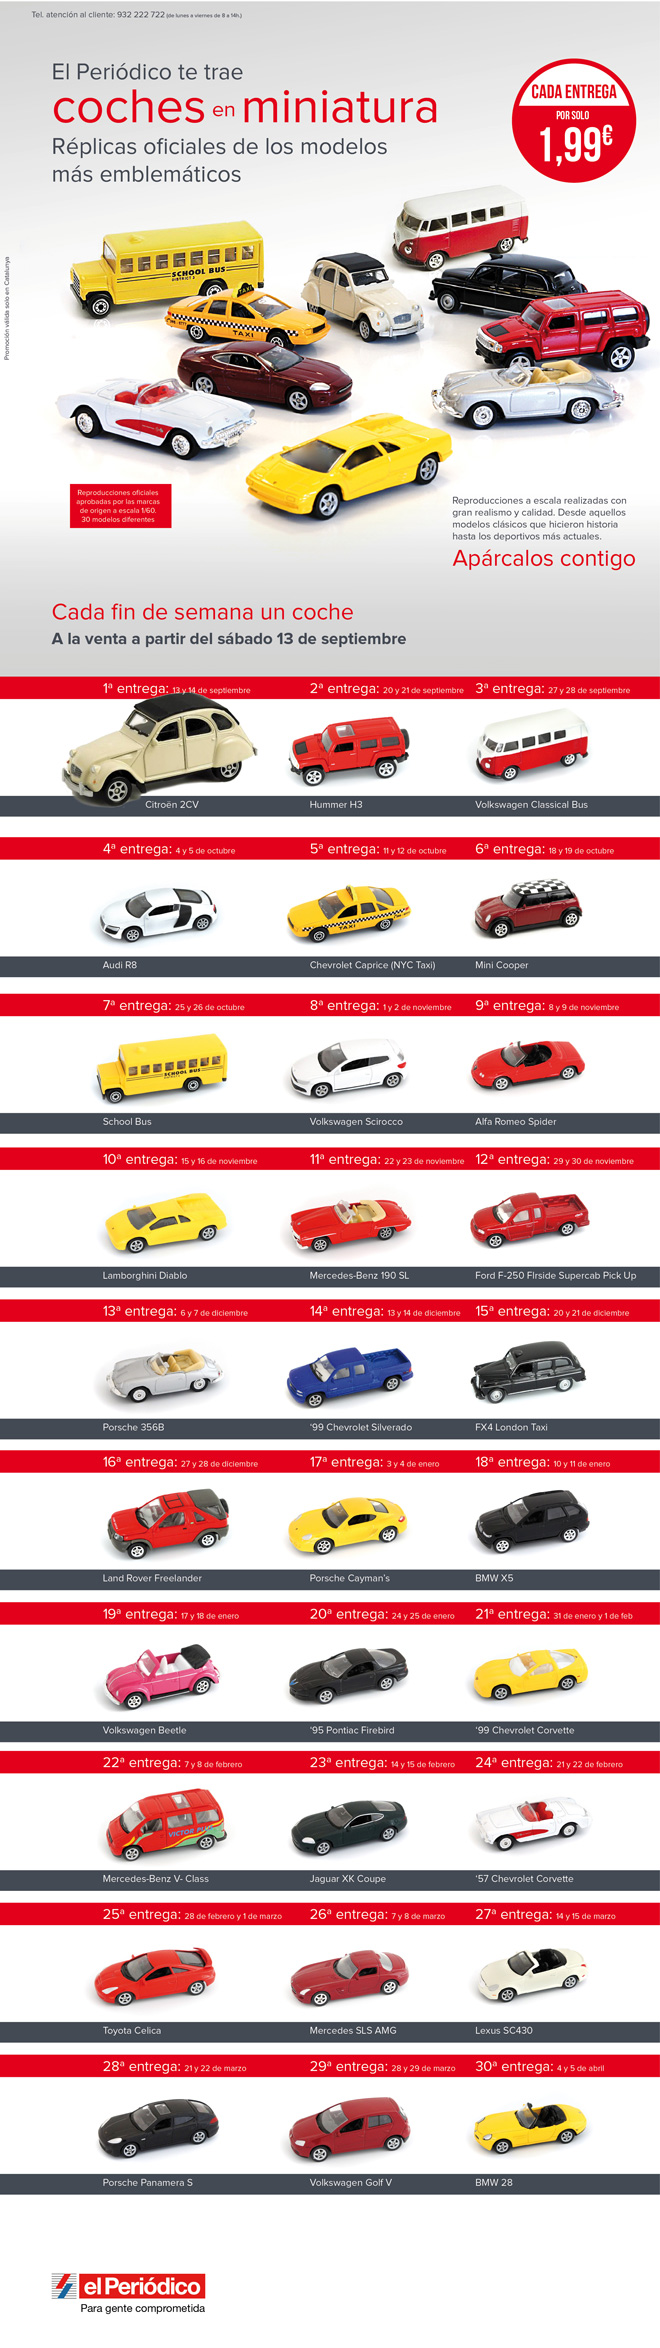 Consigue con la promoción del periódico de Cataluña coches de miniatura